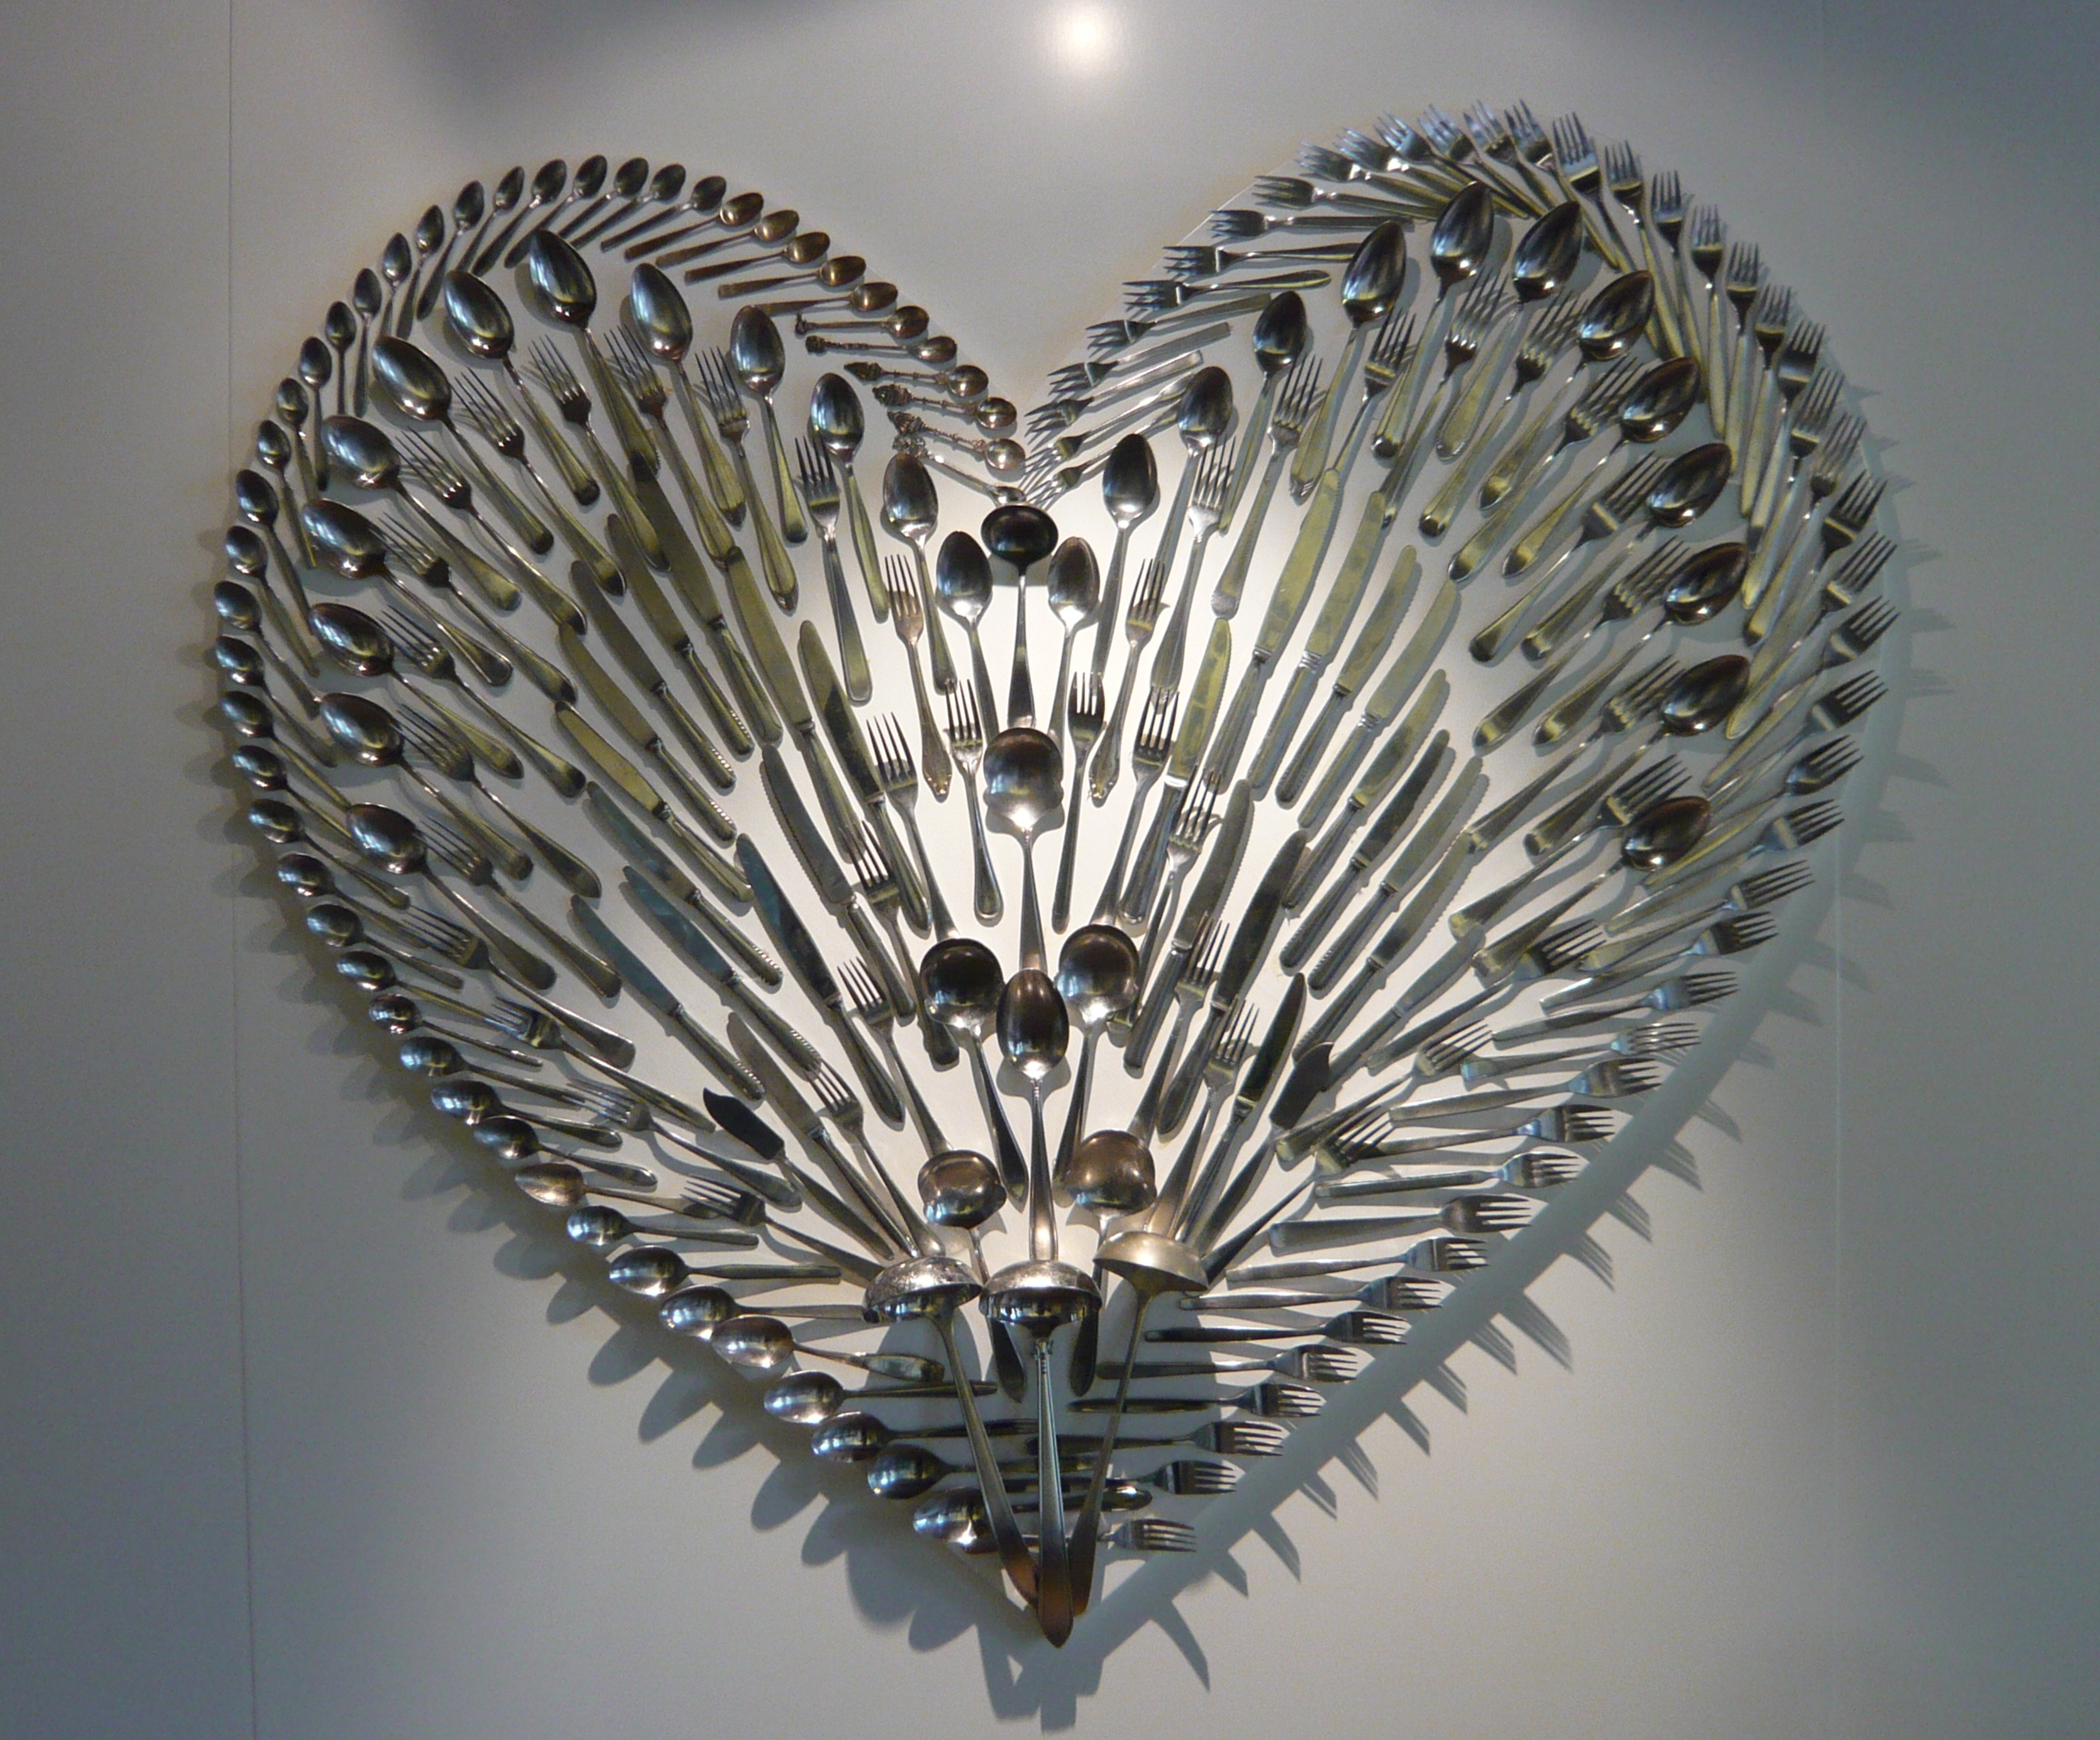 Cutlery_in_the_shape_of_a_heart_-_Zuiderzeemuseum_Enkhuizen.jpg